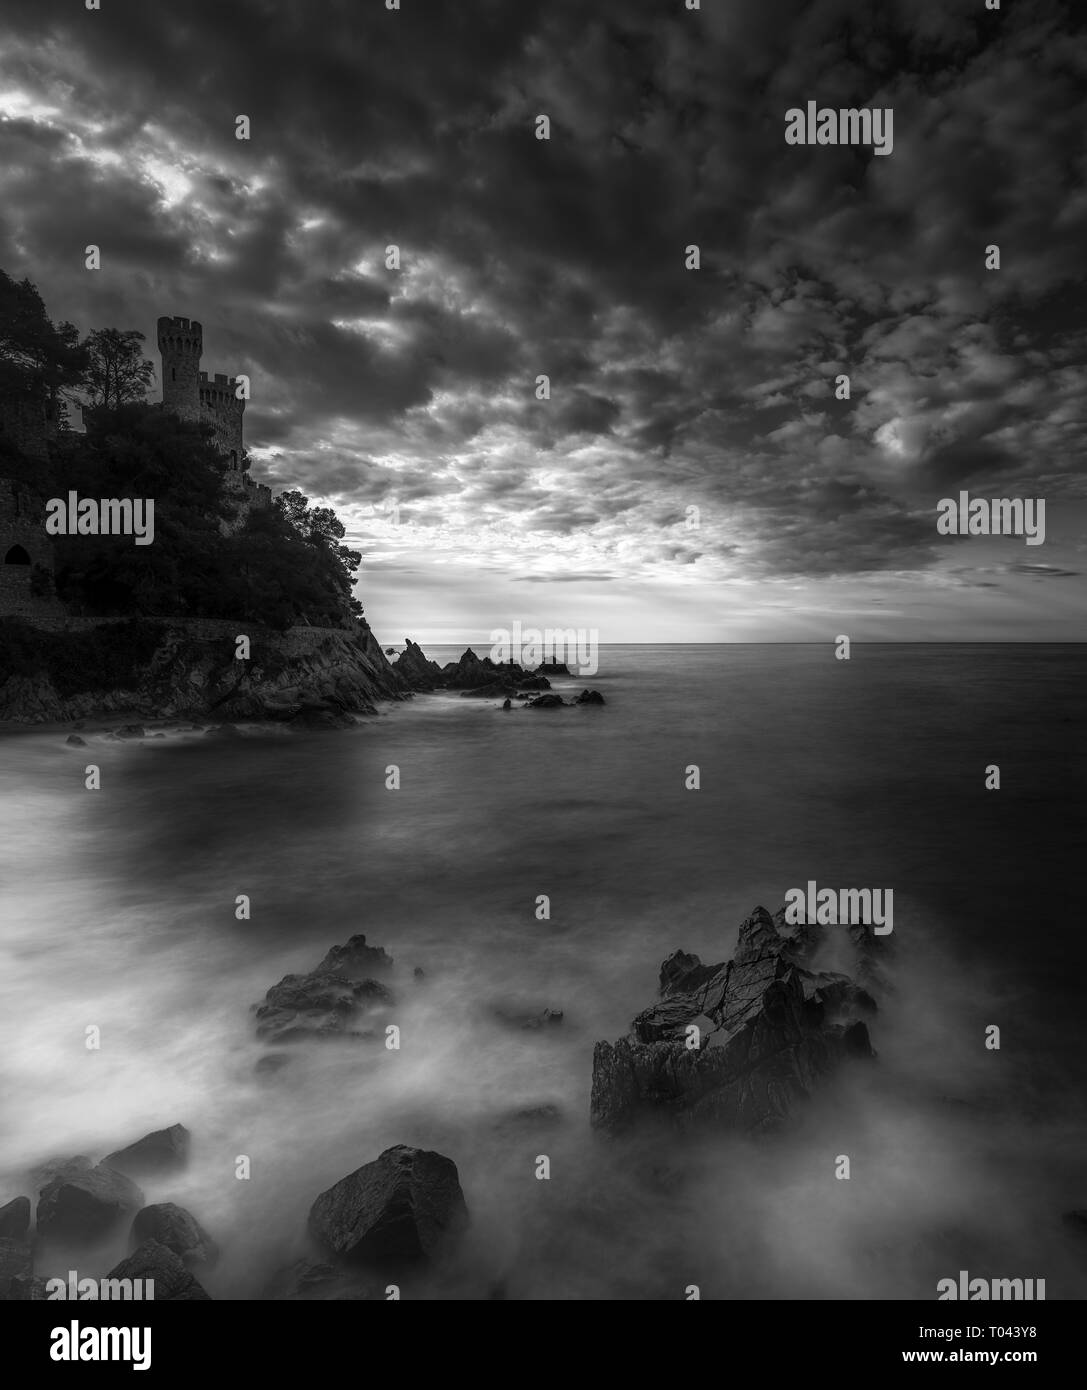 Noir et blanc, d'une exposition longue, capture de château sur une colline près de la mer, Cala Frares, Lloret de Mar, Espagne Banque D'Images